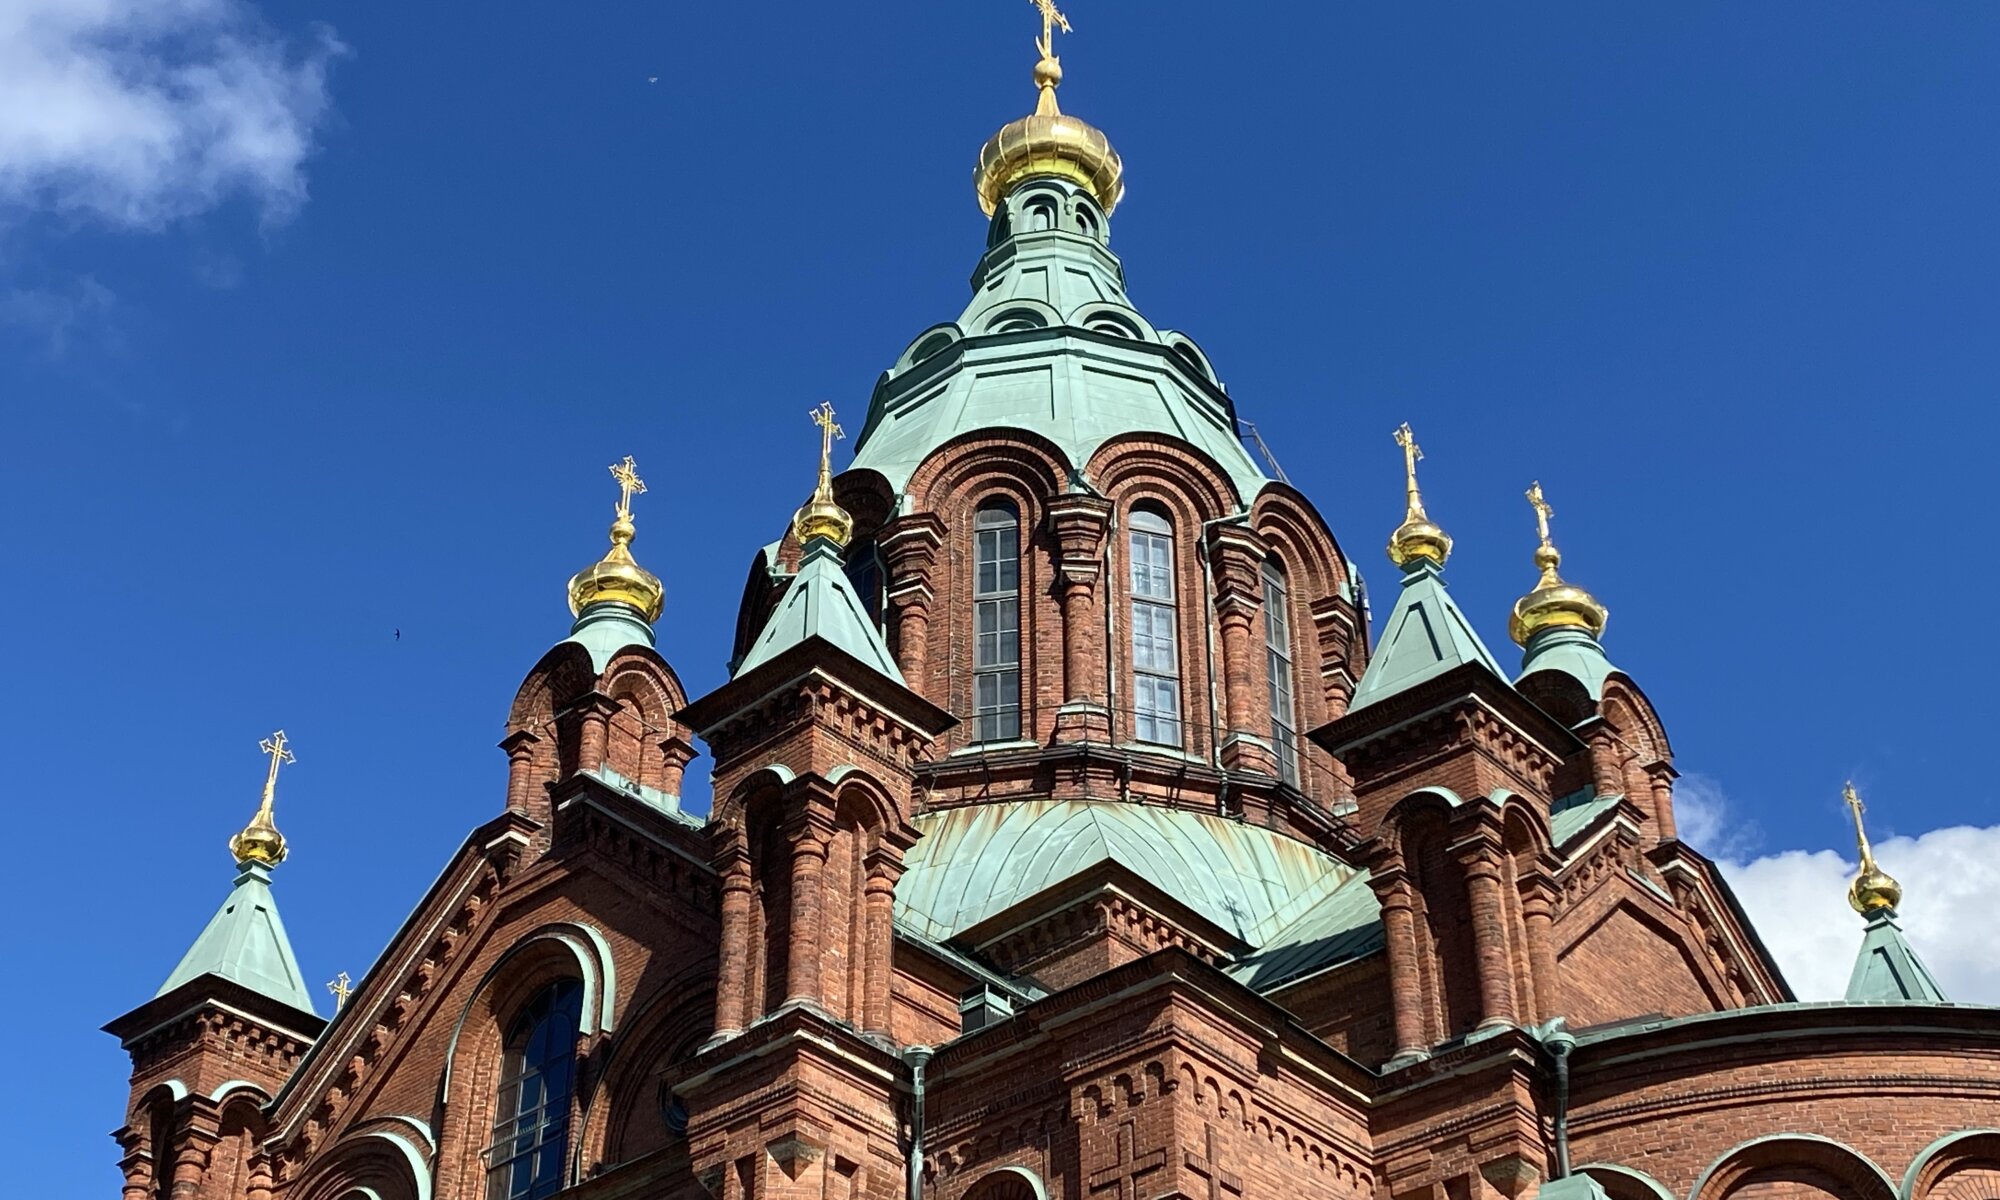 Uspenski cathedral, Helsinki